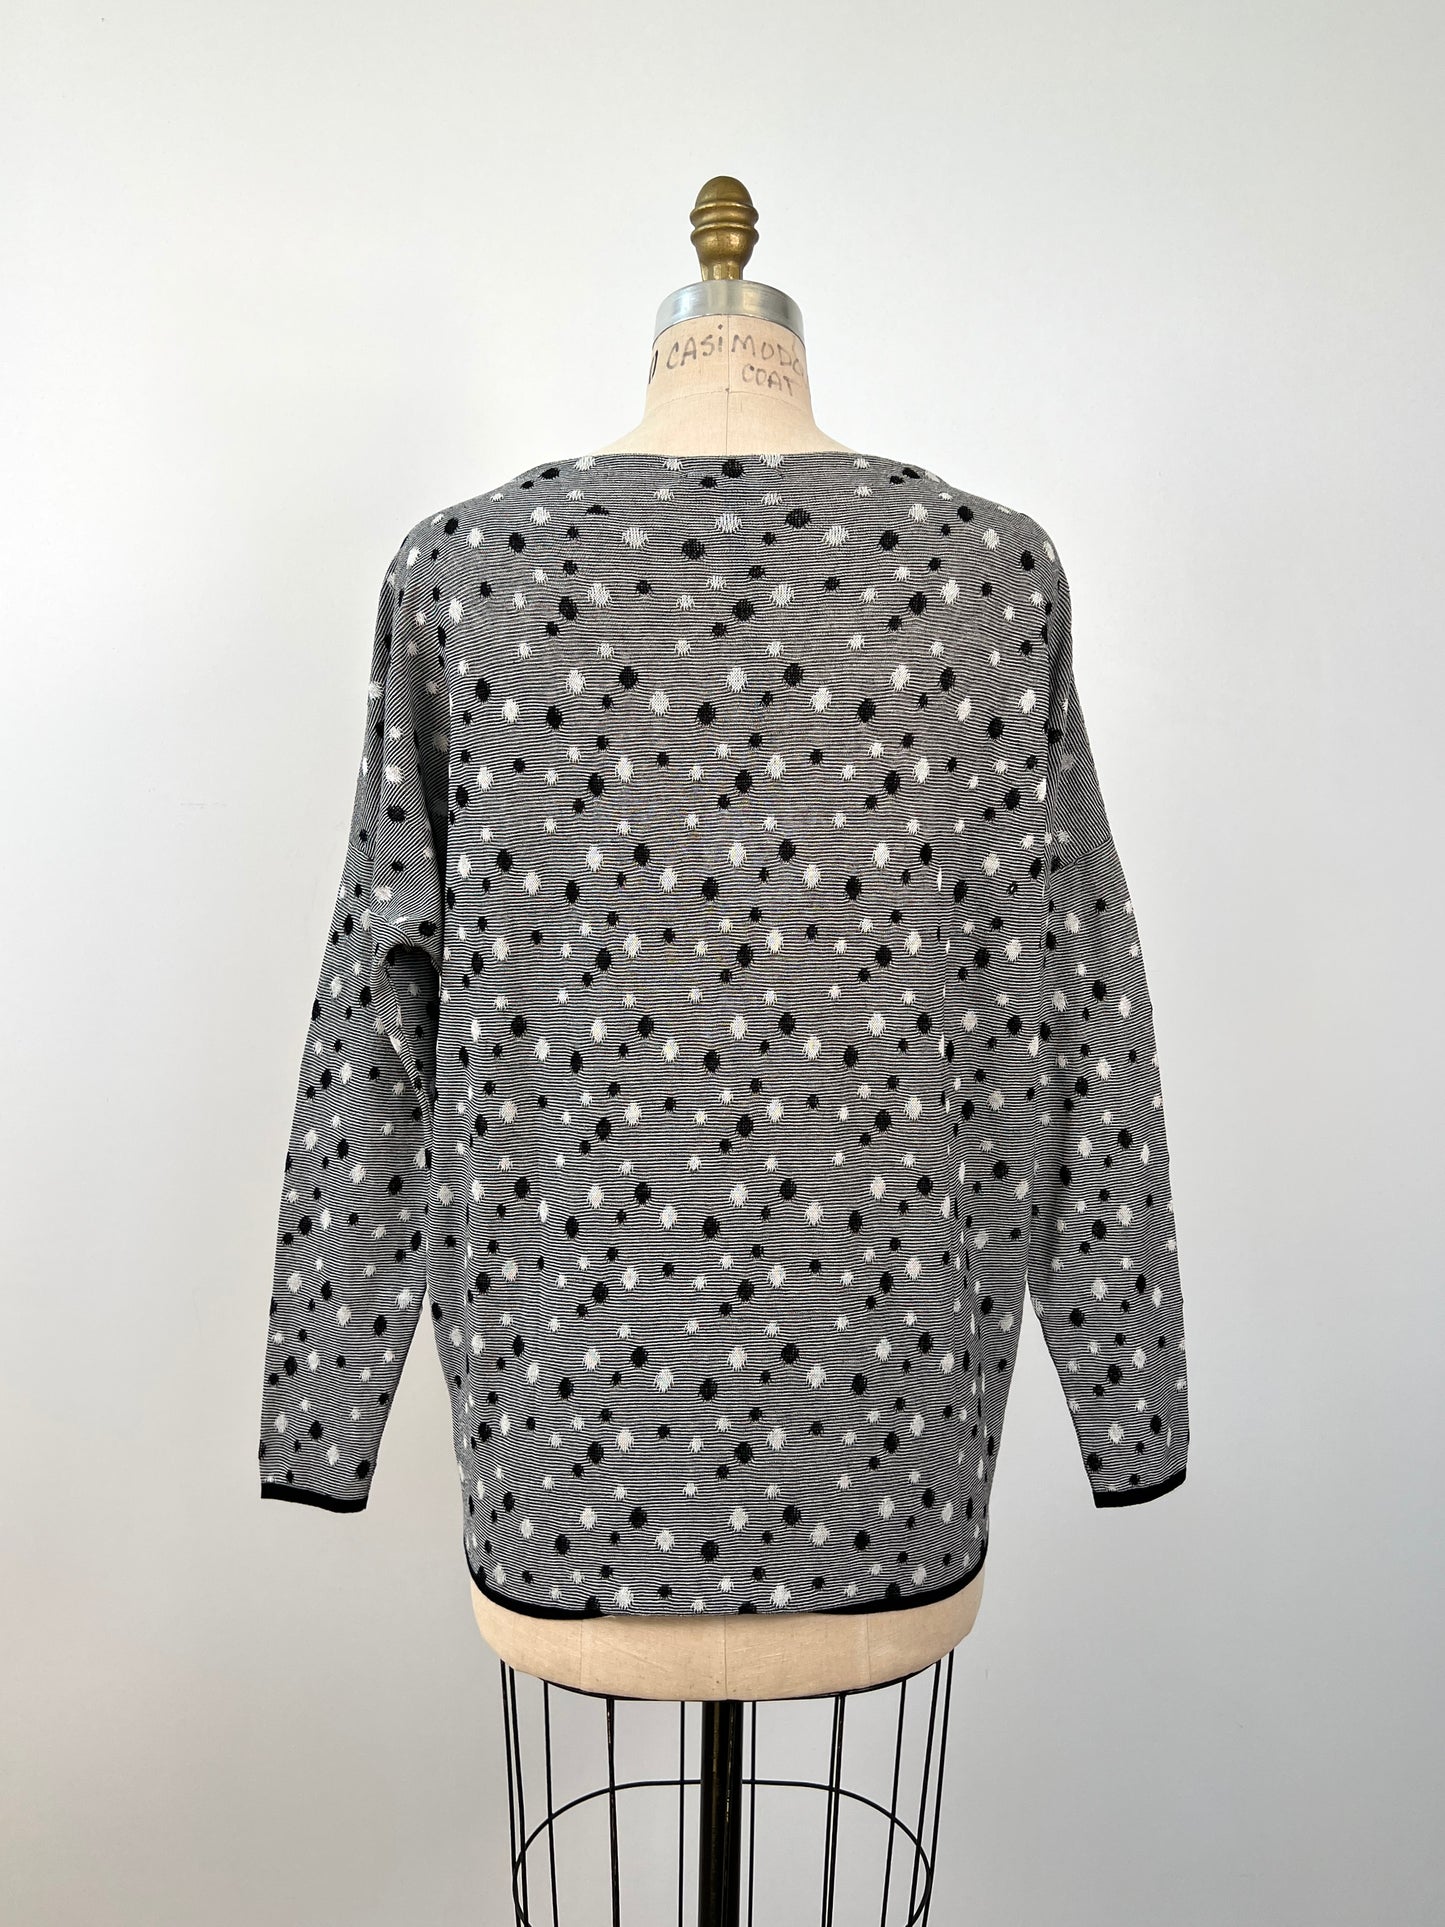 Chandail en tricot à pois et rayures noir et blanc (TU)